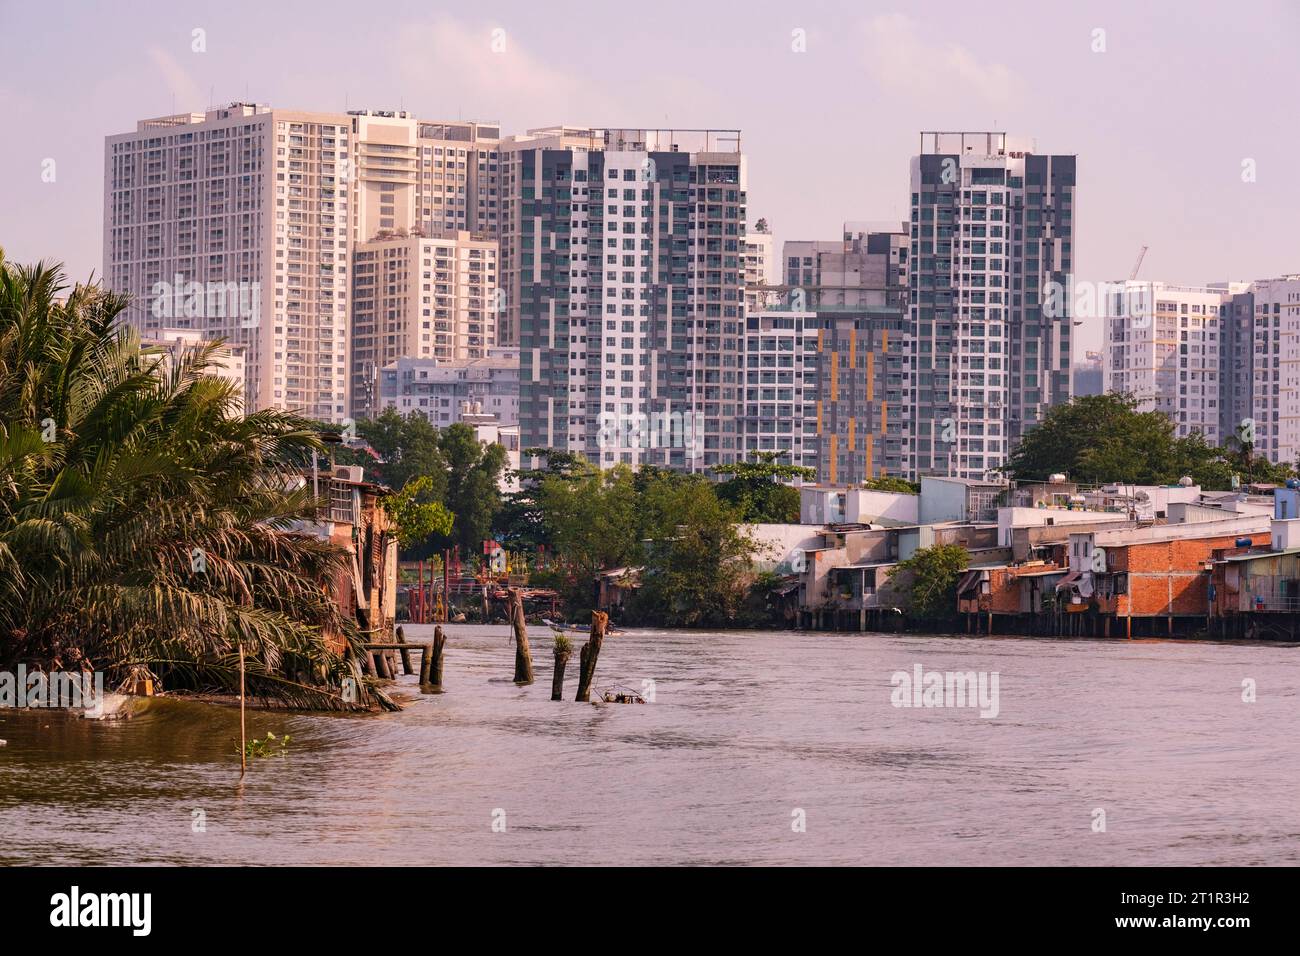 Saigon Riverside View in der Nähe von Ho Chi Minh, Vietnam. Gegenüberstellung von modernen Hochhauswohnungen mit bescheidenen Wohnhäusern der unteren Klasse. Stockfoto